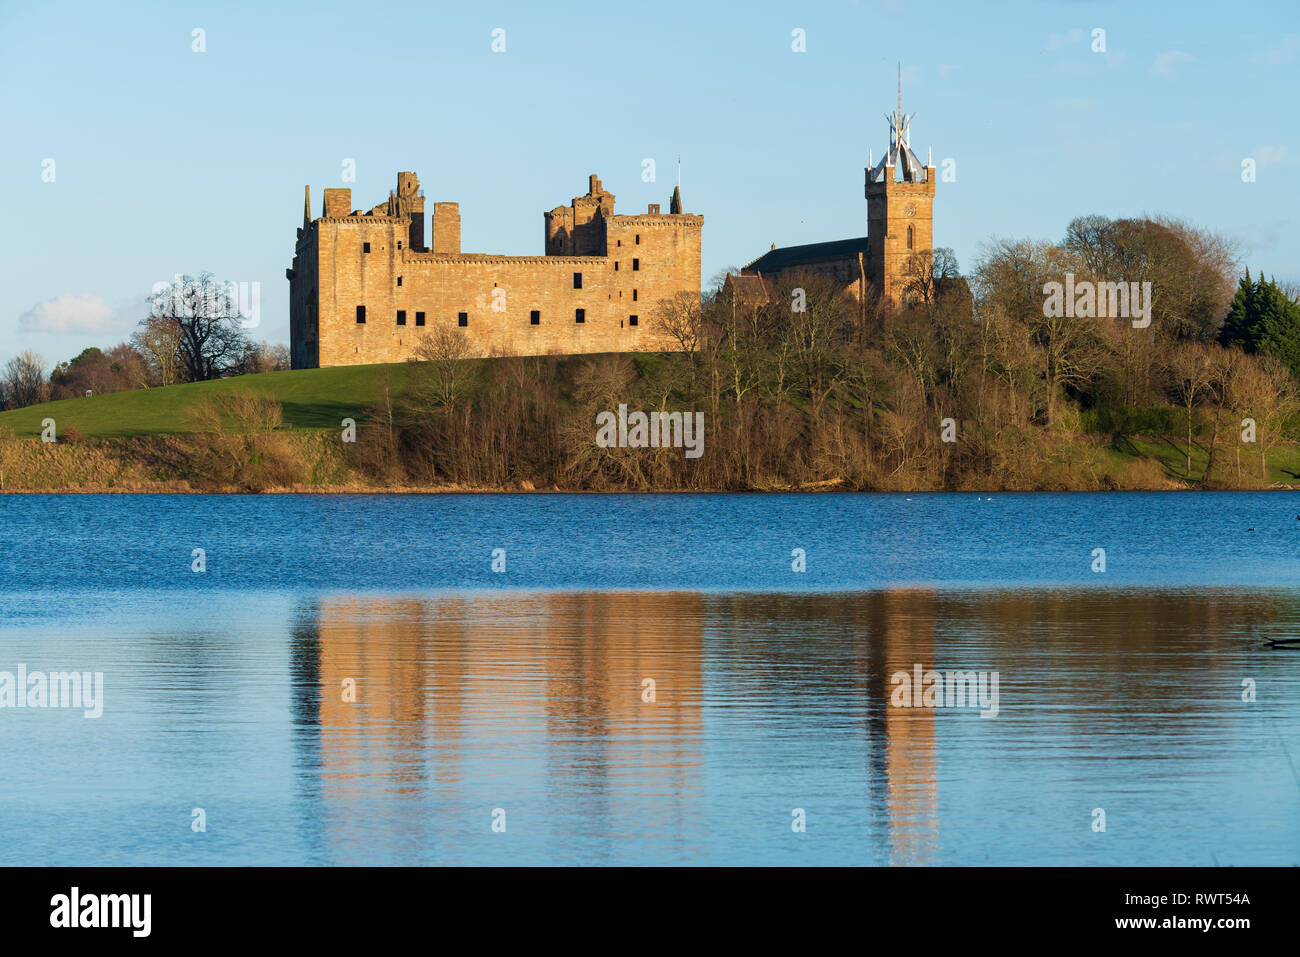 Anzeigen von Linlithgow Palace in Linlithgow, West Lothian, Schottland, Großbritannien. Geburtsort von Mary Queen of Scots. Stockfoto